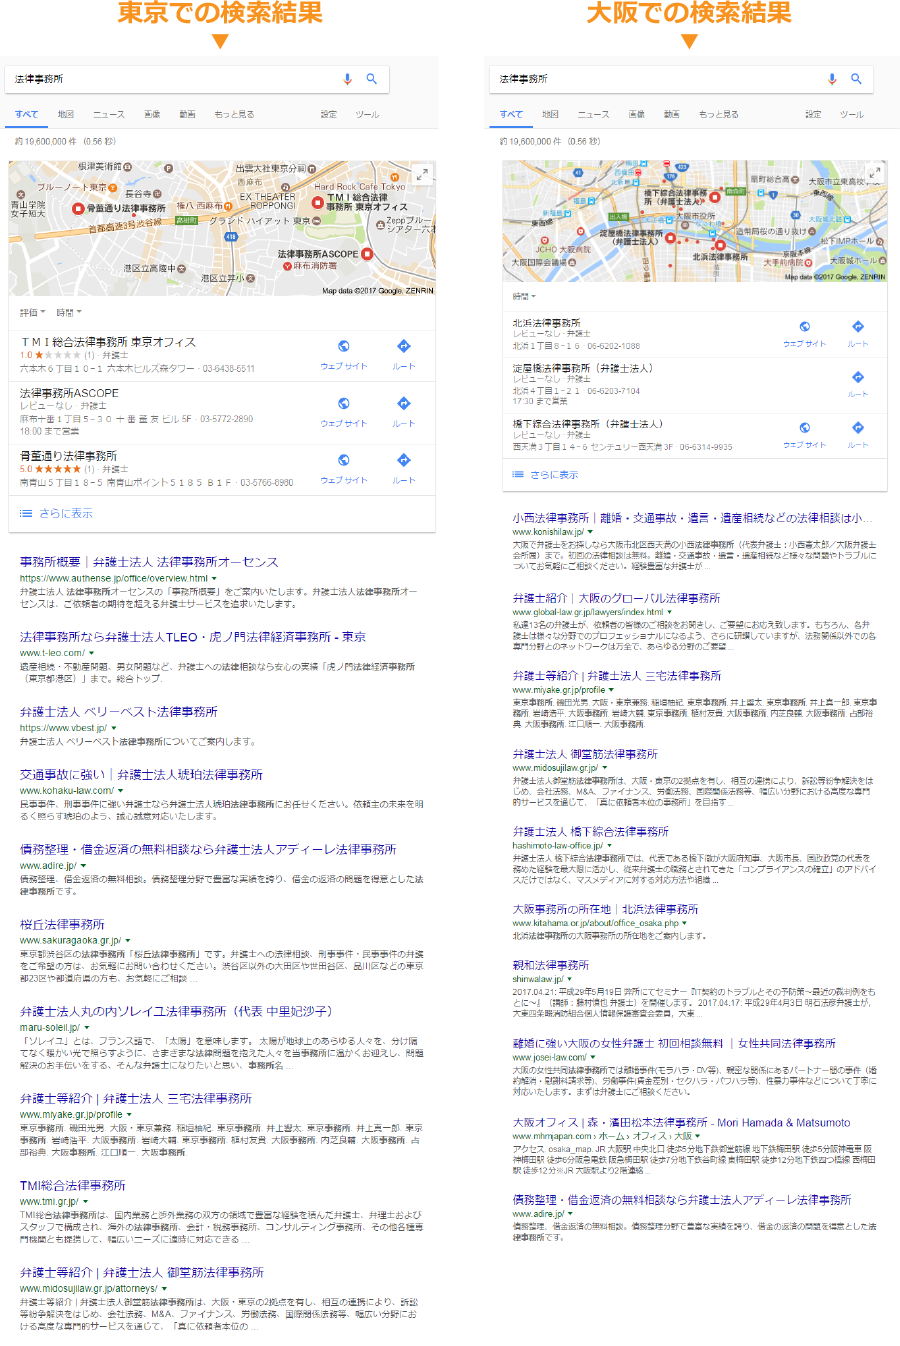 「法律事務所」で検索した東京と大阪での検索結果の違い